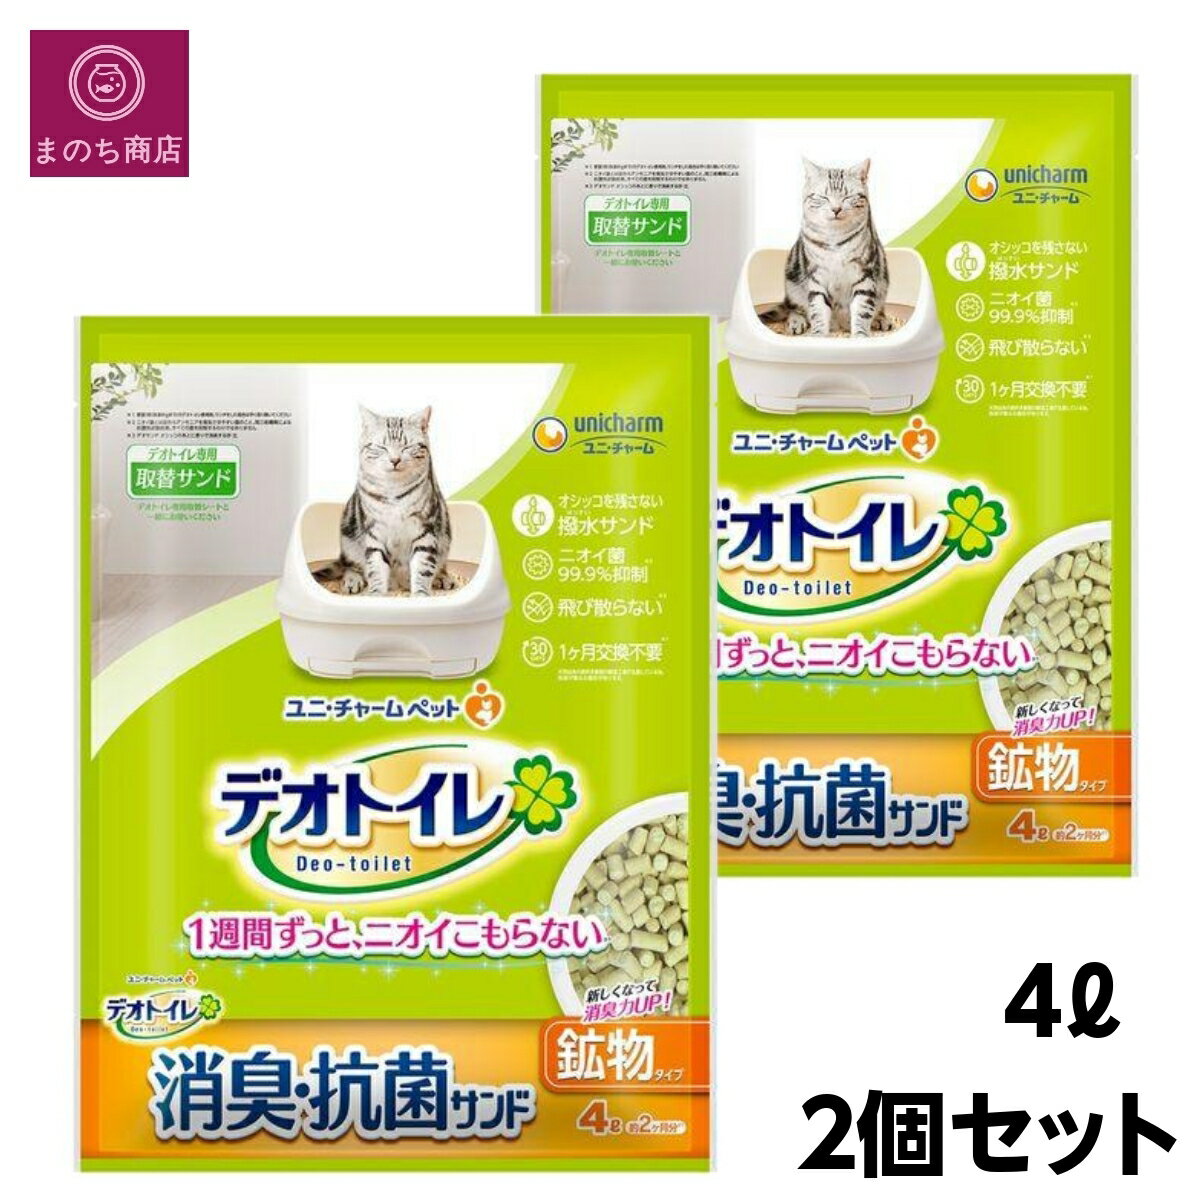 デオトイレ 猫用 サンド 消臭・抗菌サンド 猫砂 8L(4L×2) おしっこ ペット用品 ユニチャーム